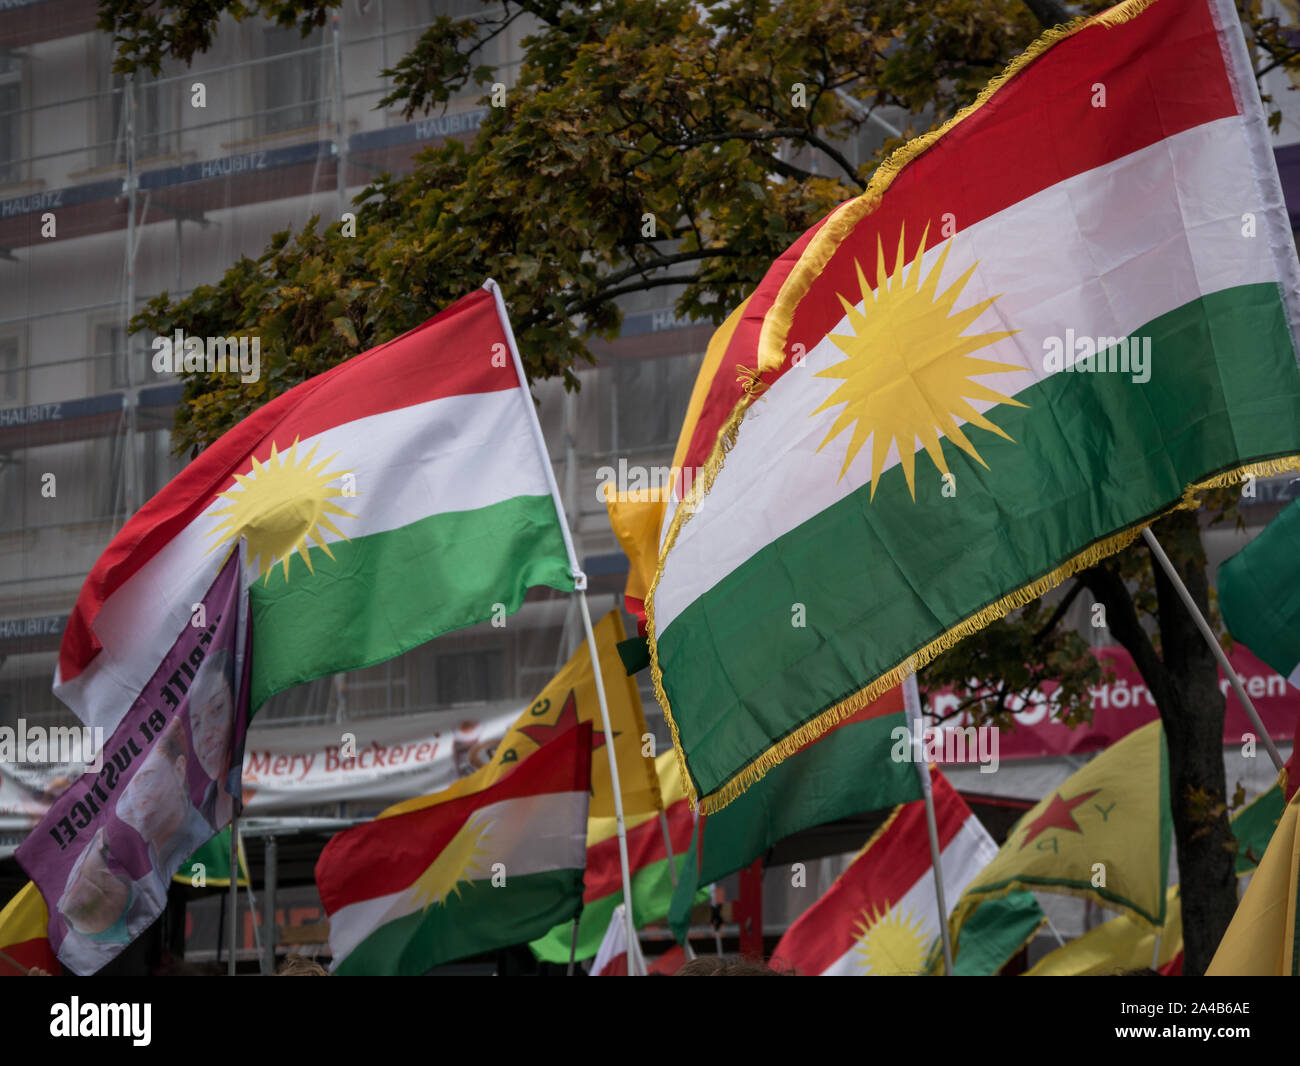 Berlín/Alemania, Oct 2019: Demostración y protestar contra la ofensiva turca y agresiones contra los kurdos en Siria, el Kurdistán y muchas banderas ypg Foto de stock